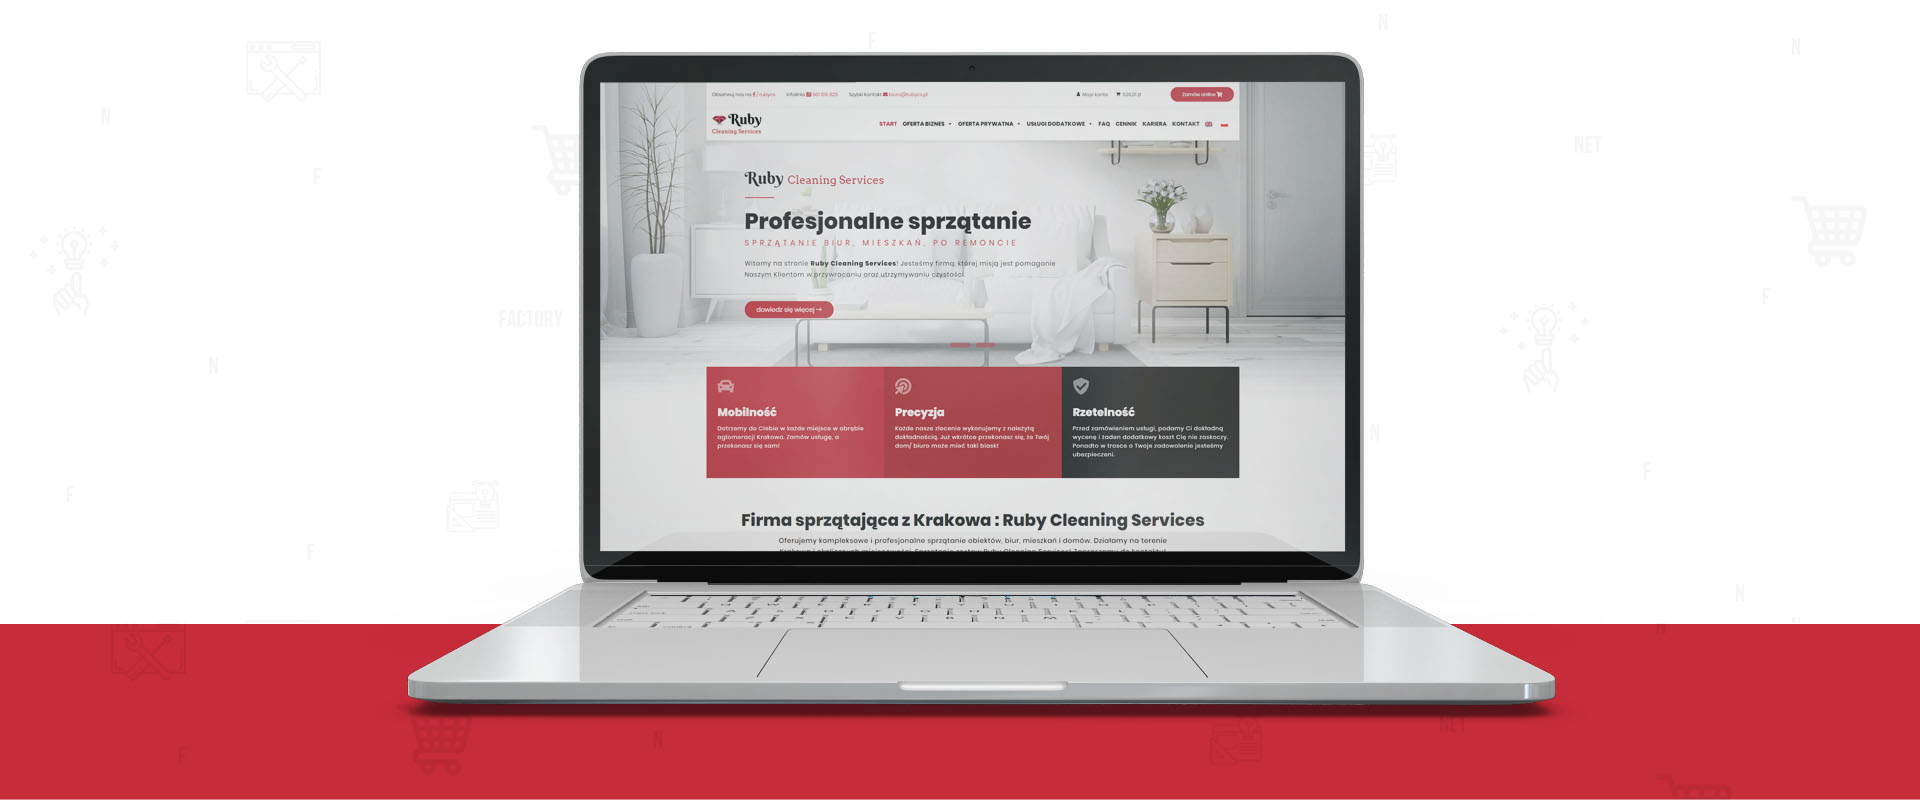 Responsywna strona sprzedażowa dla Ruby Cleaning Service firmy sprzątającej z Krakowa